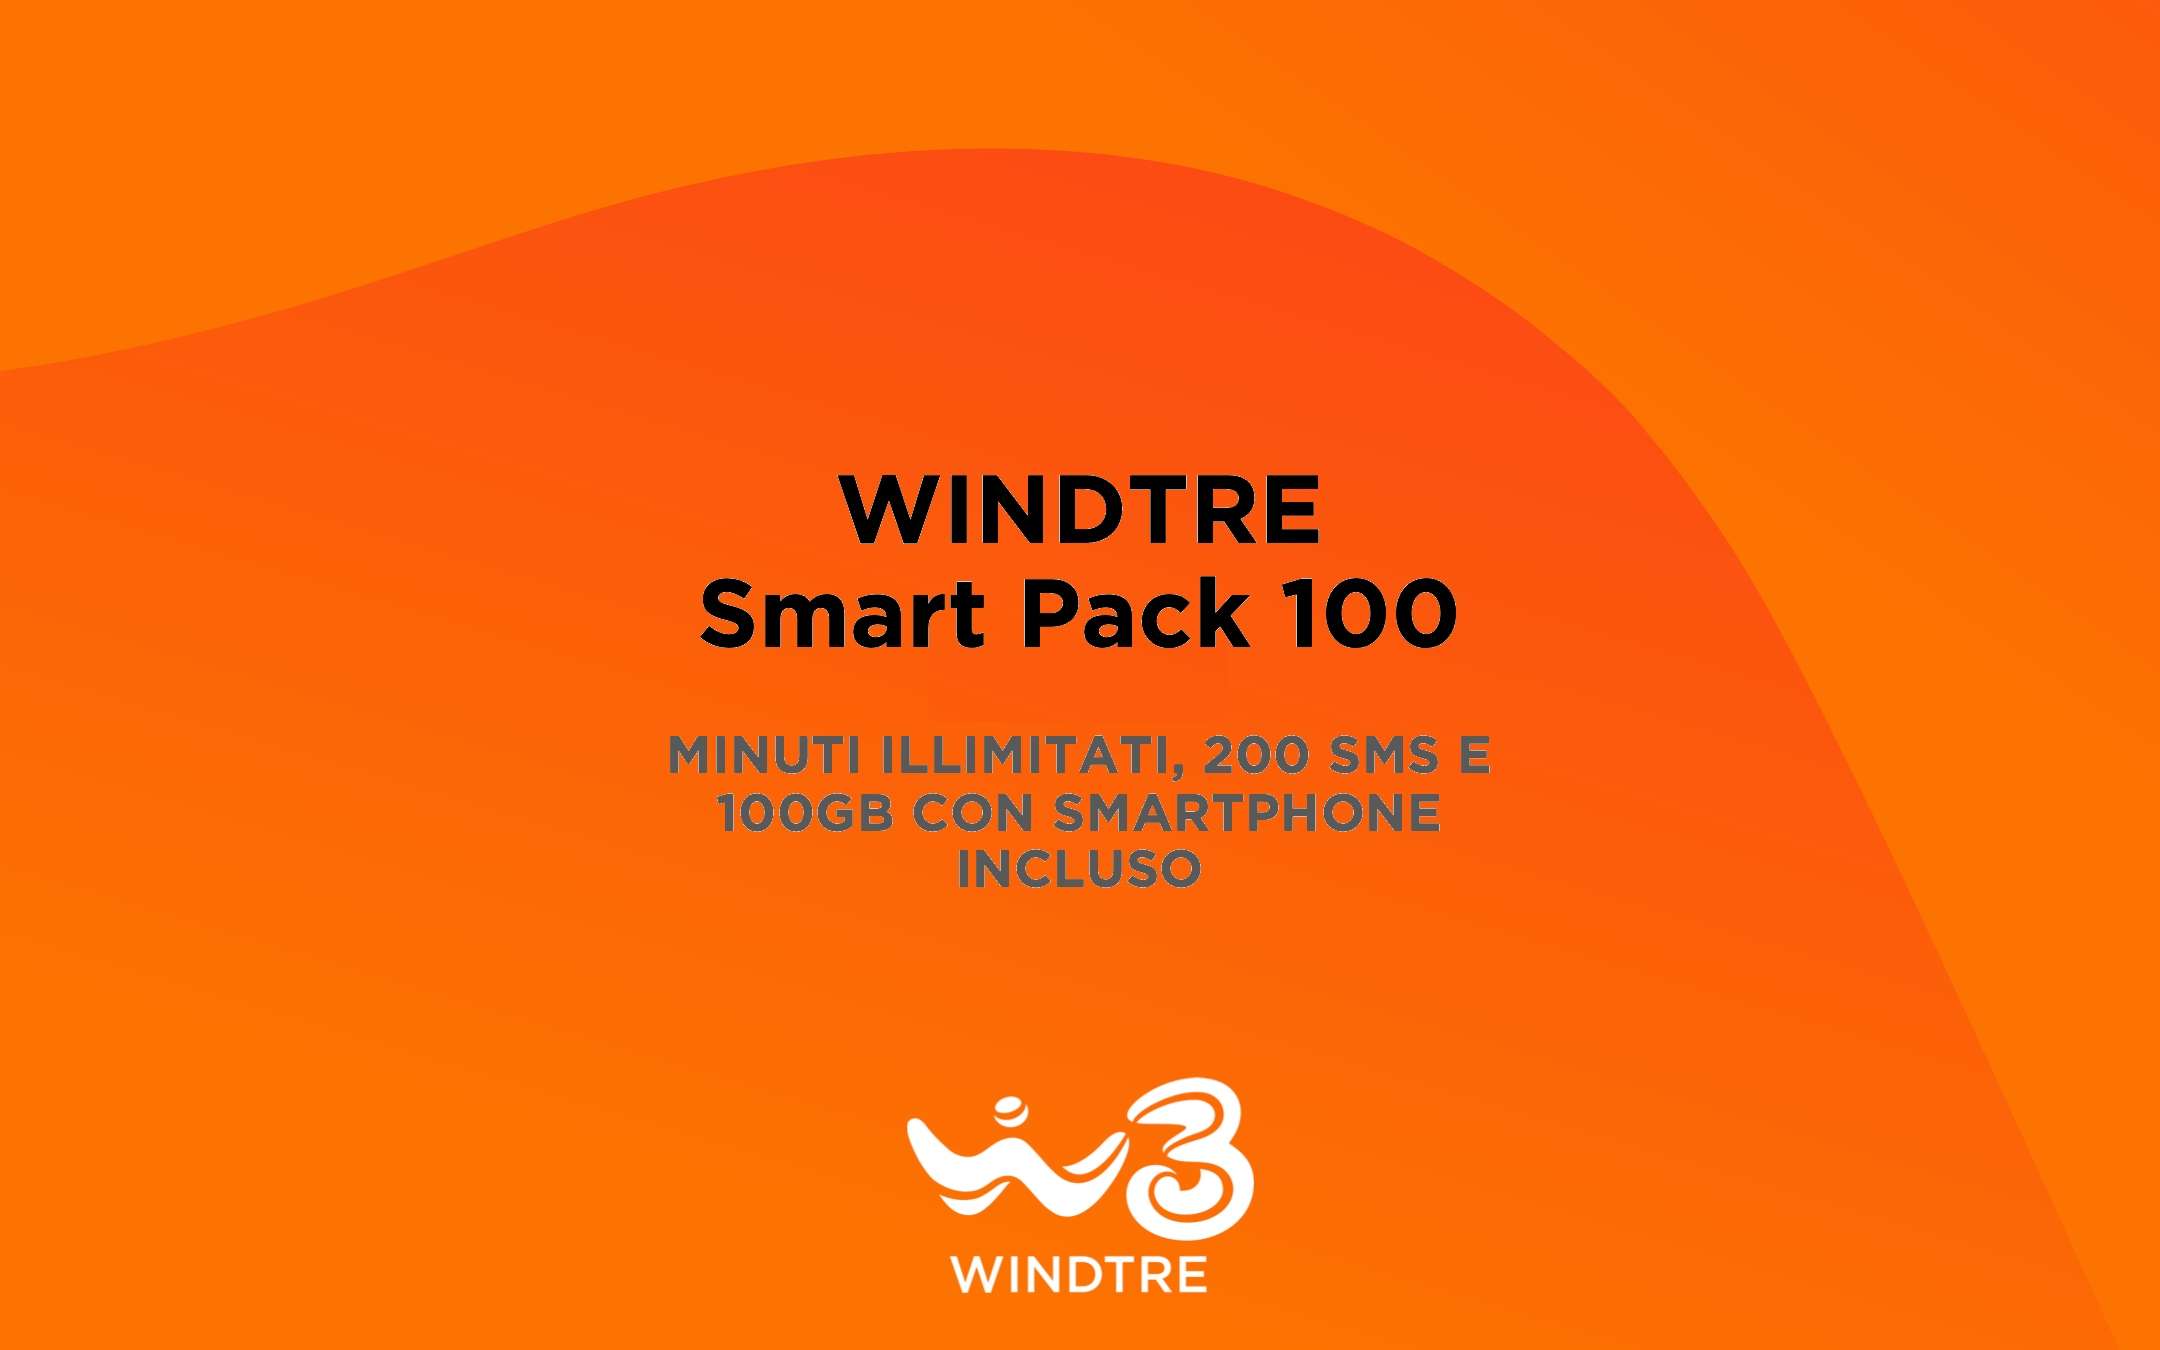 WINDTRE Smart Pack 100: smartphone incluso e 100GB